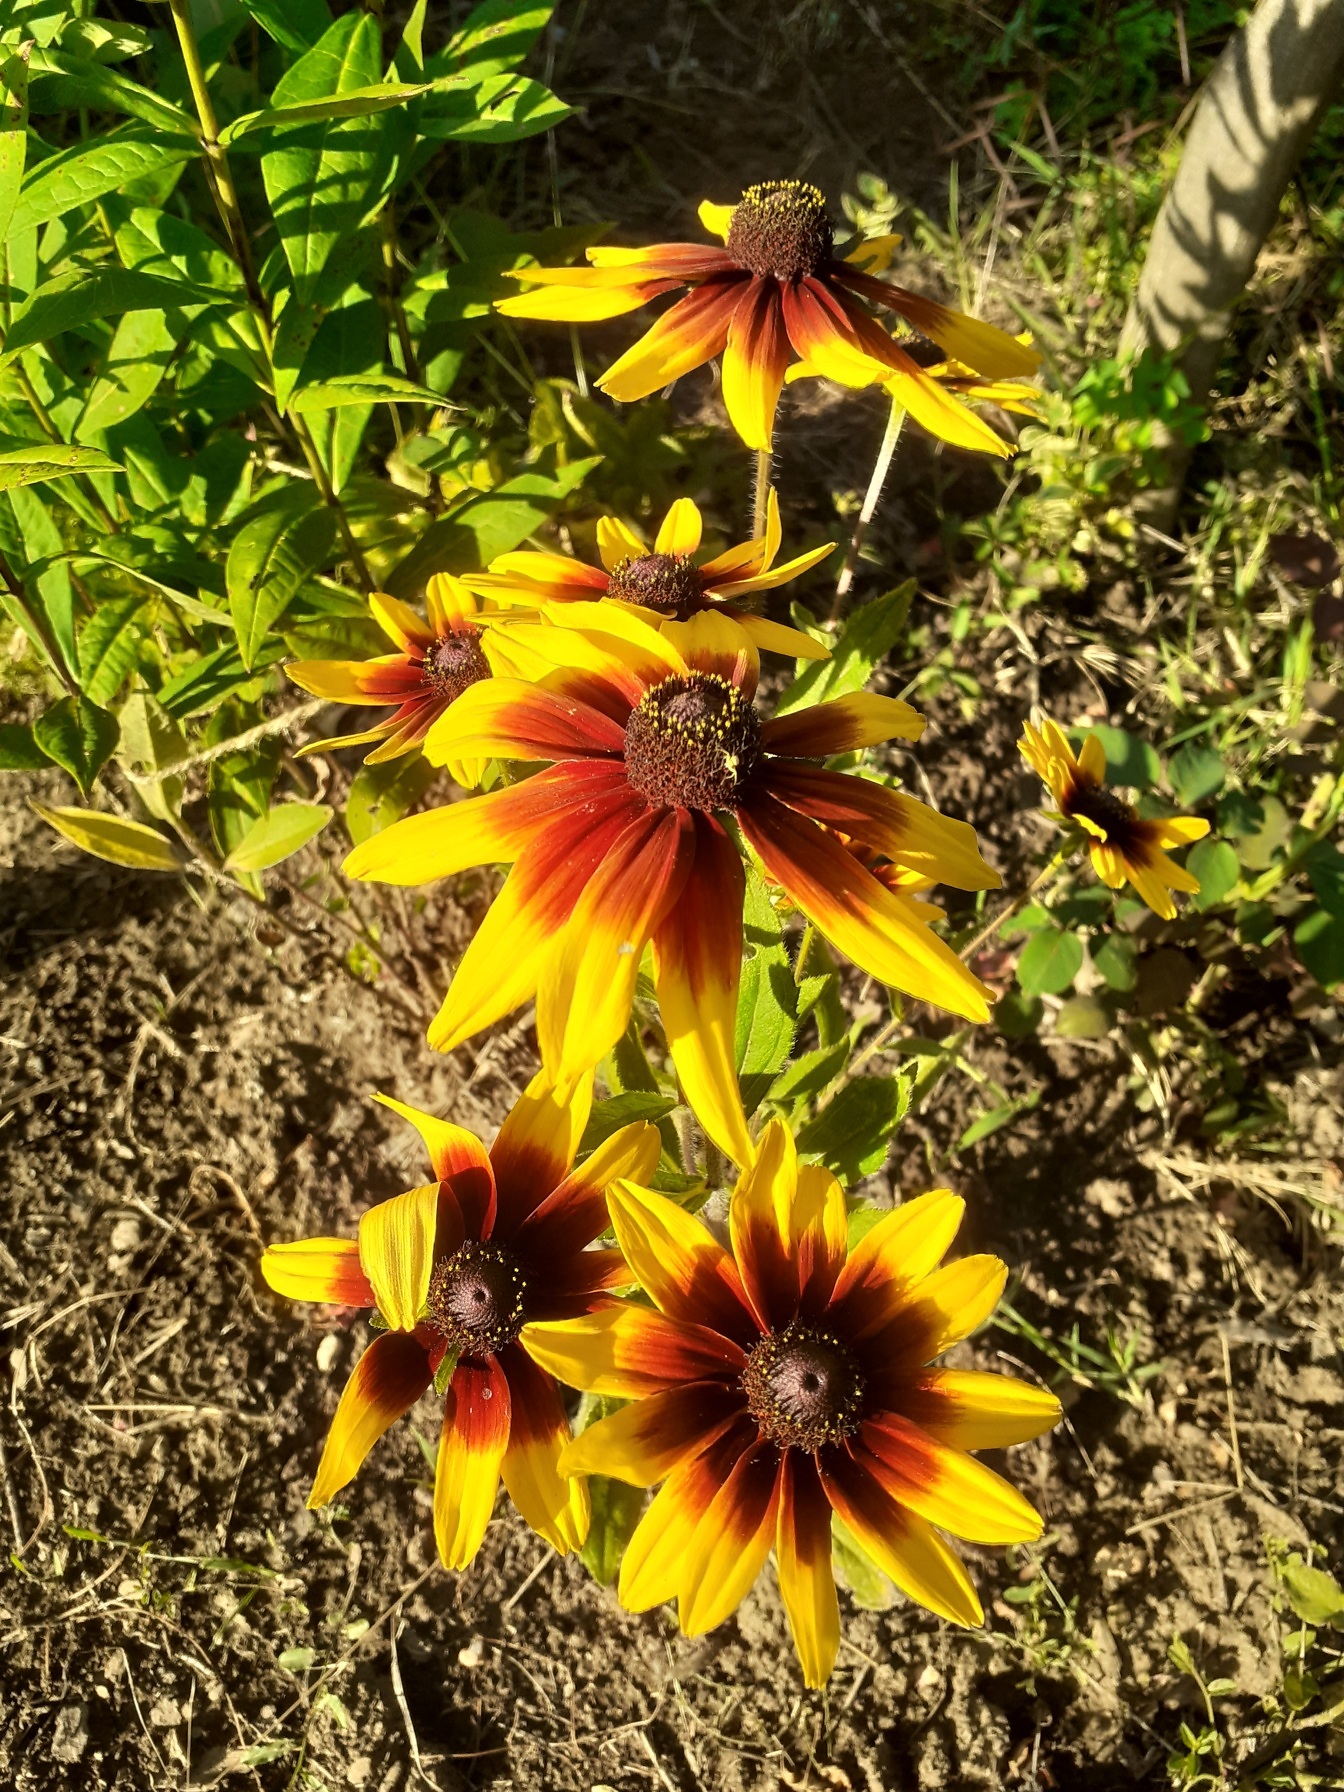 黑眼睛苏珊 (Ruudbeckia hirta) 花的橙黄色花瓣